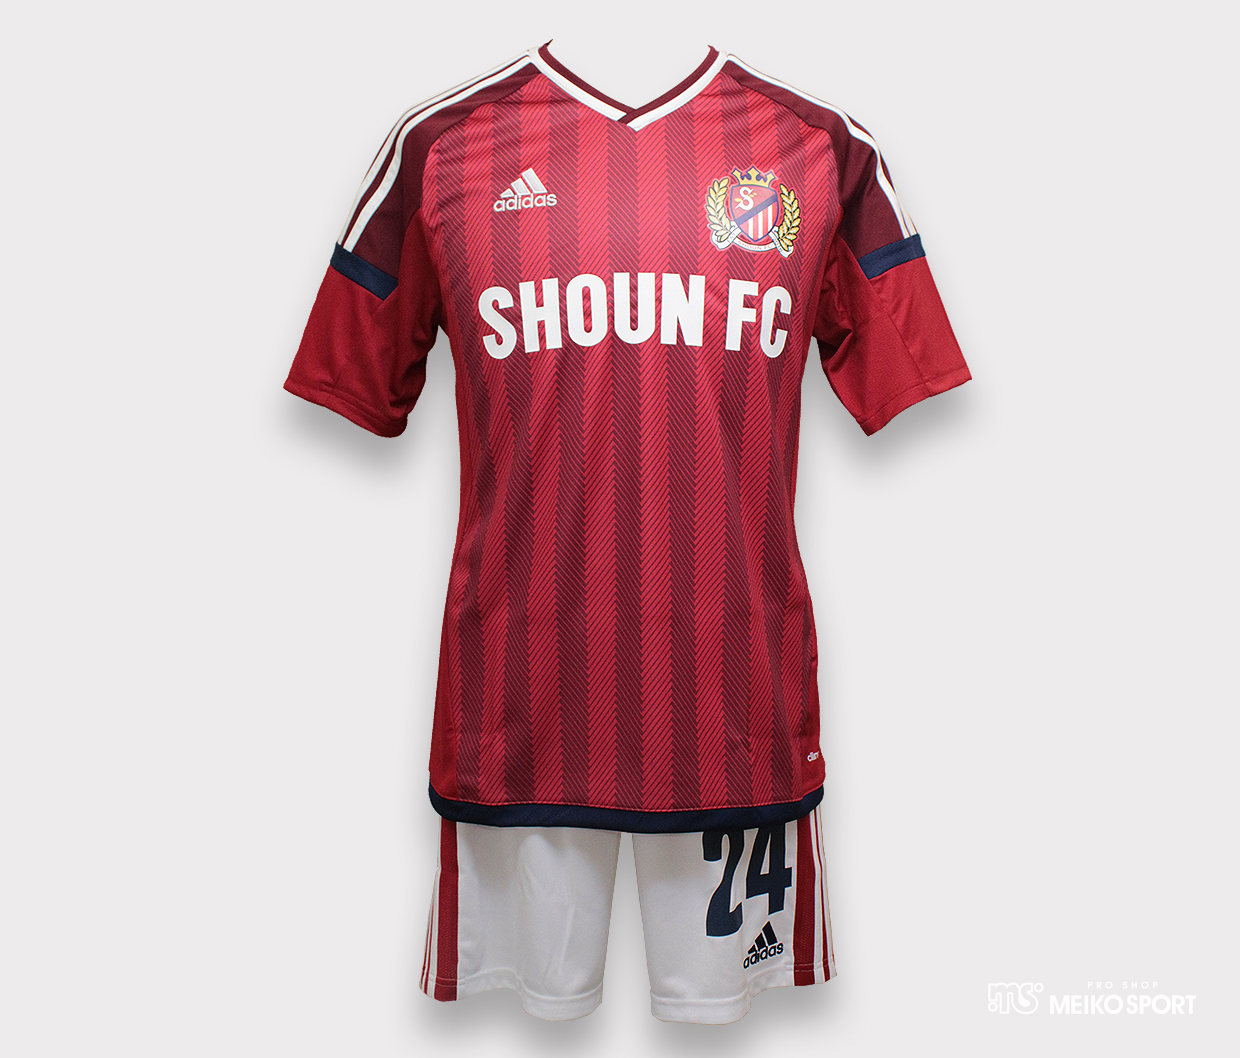 SHOUN FC